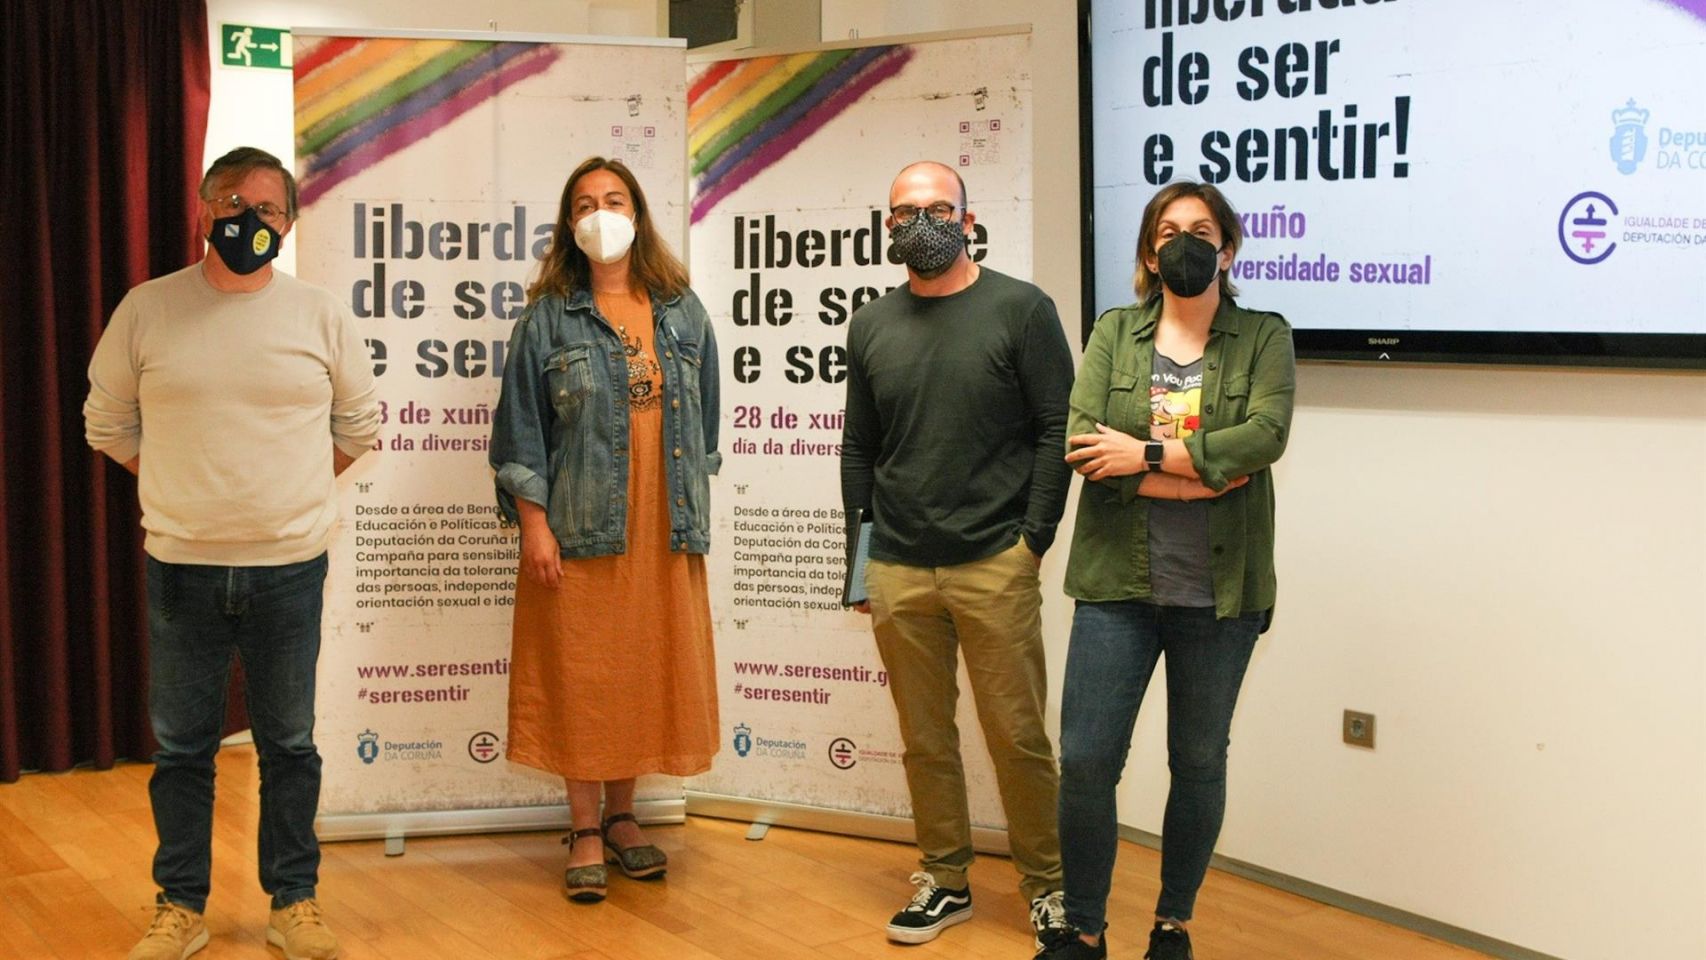 Presentación de los actos por las diversidades sexuales en la Diputación de A Coruña